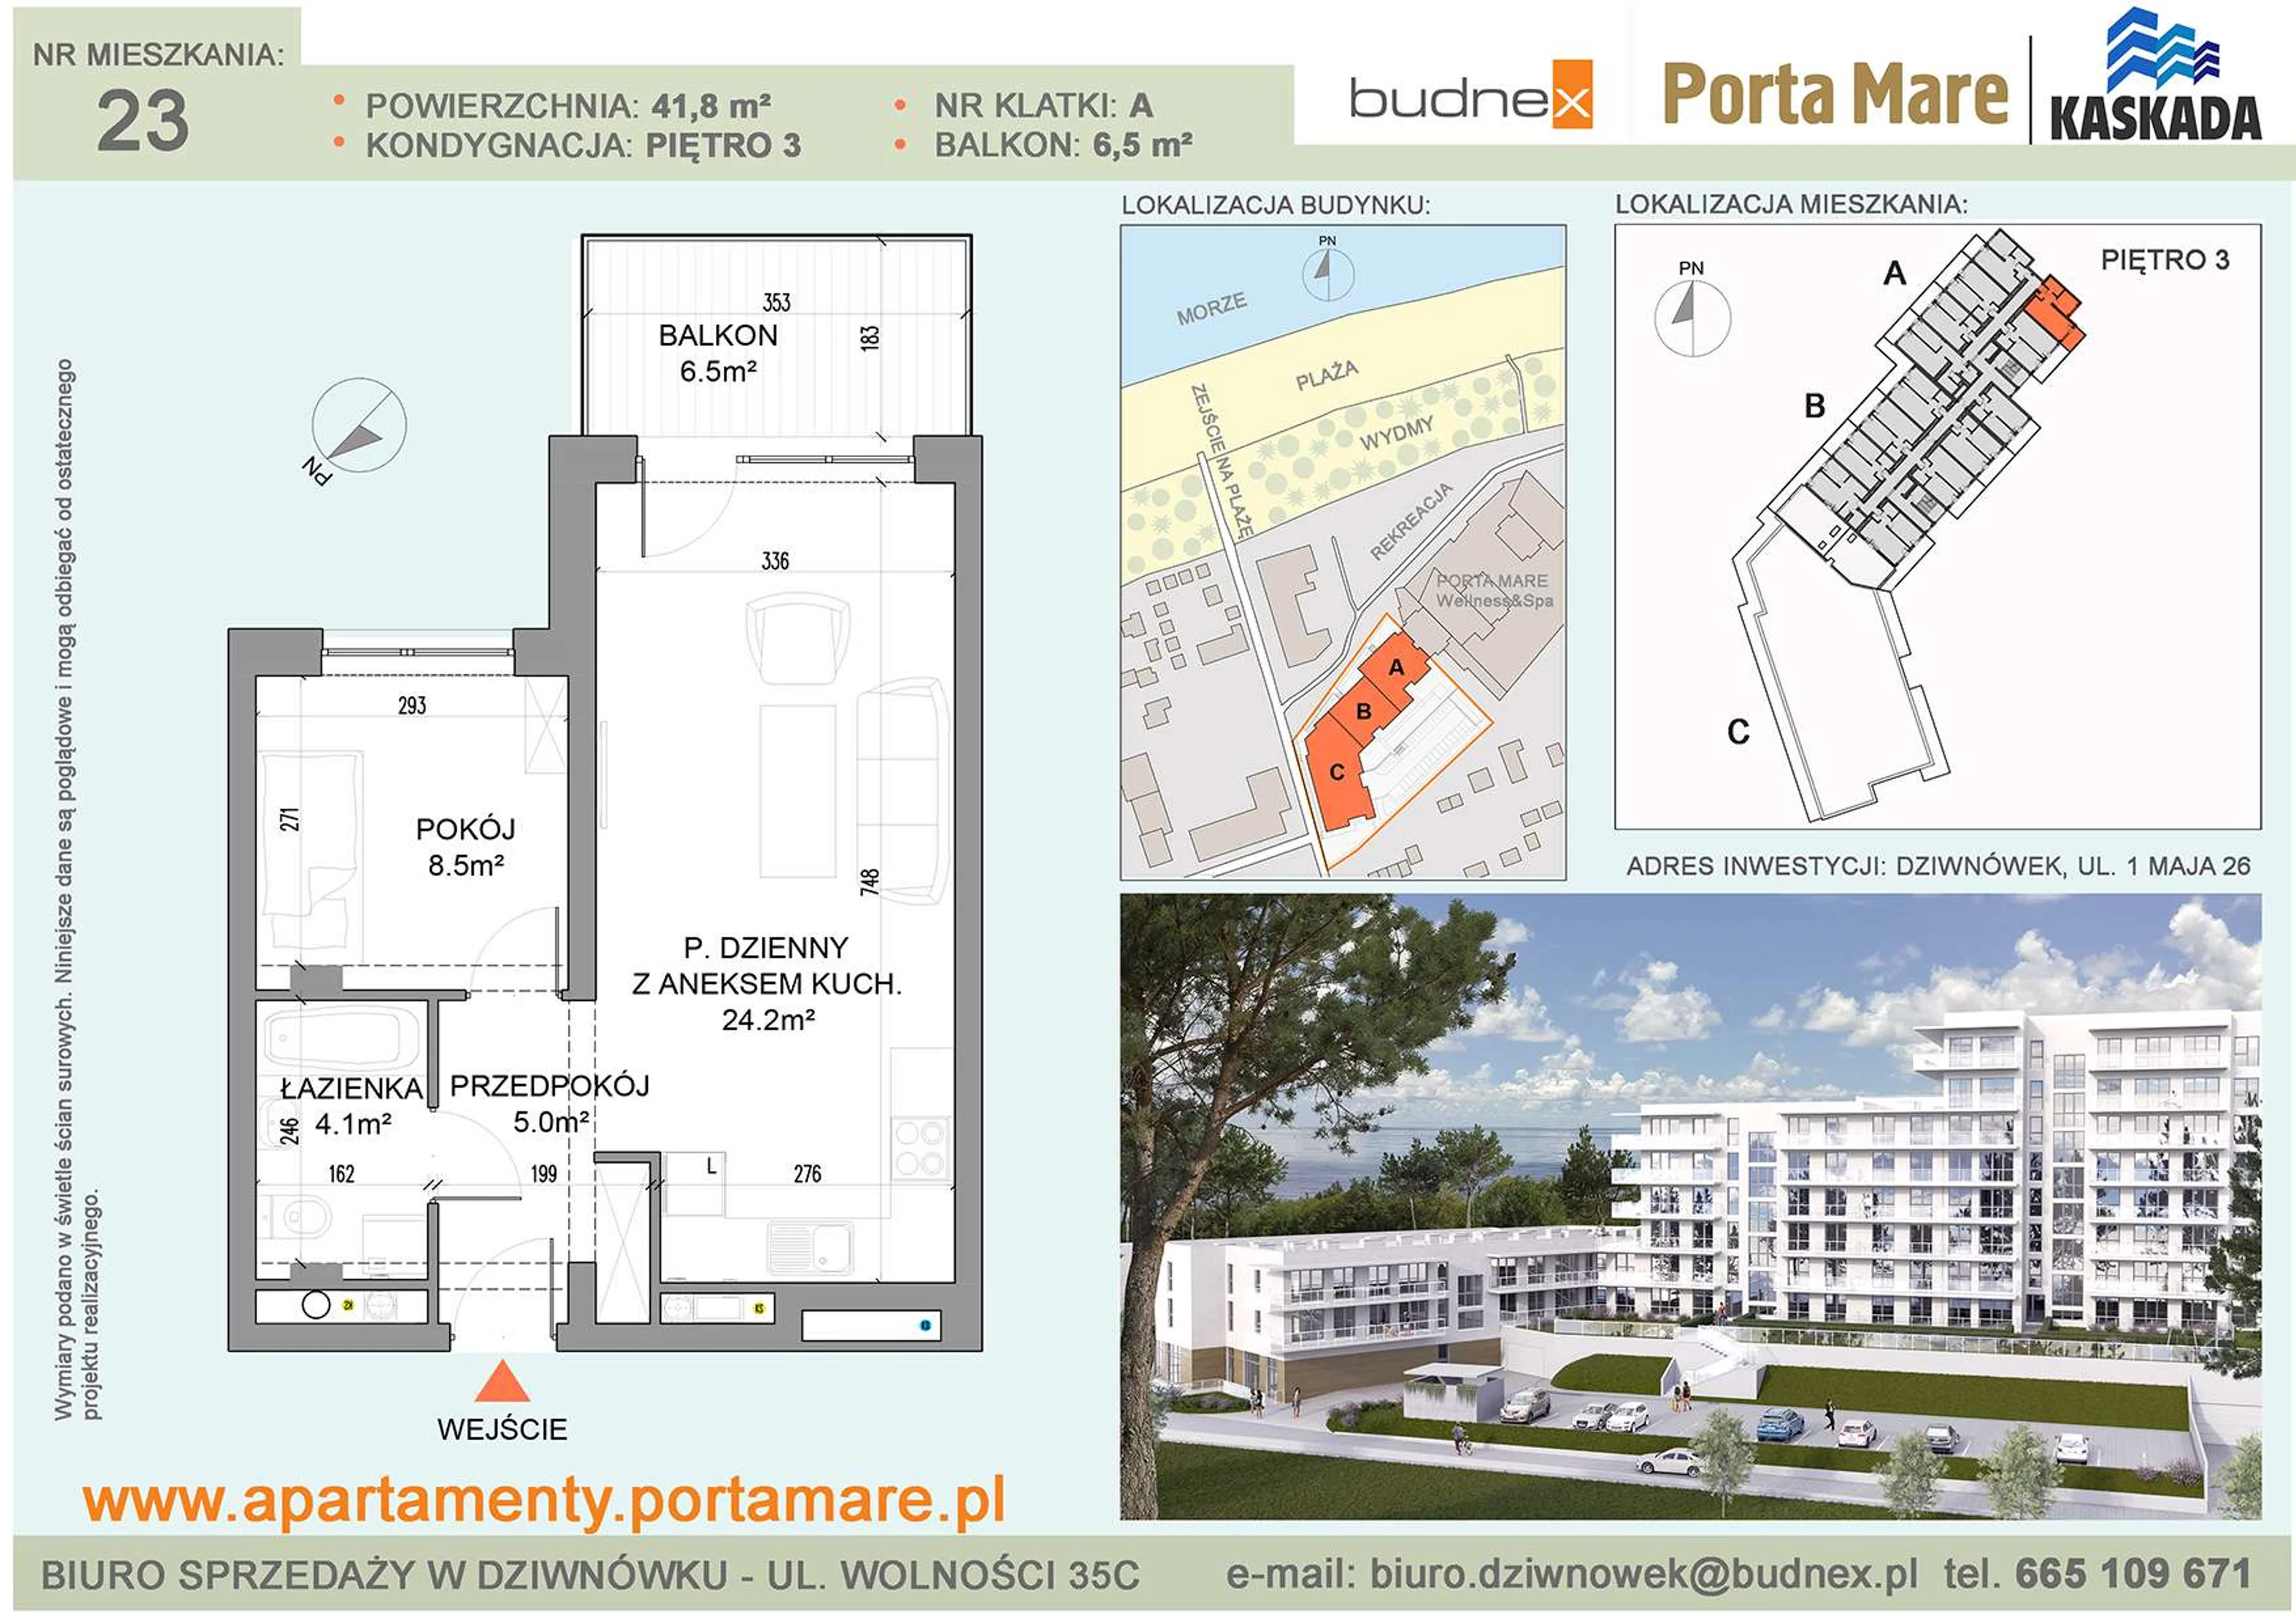 Mieszkanie 41,80 m², piętro 3, oferta nr A/M23, Porta Mare Kaskada, Dziwnówek, ul. 1 Maja 26